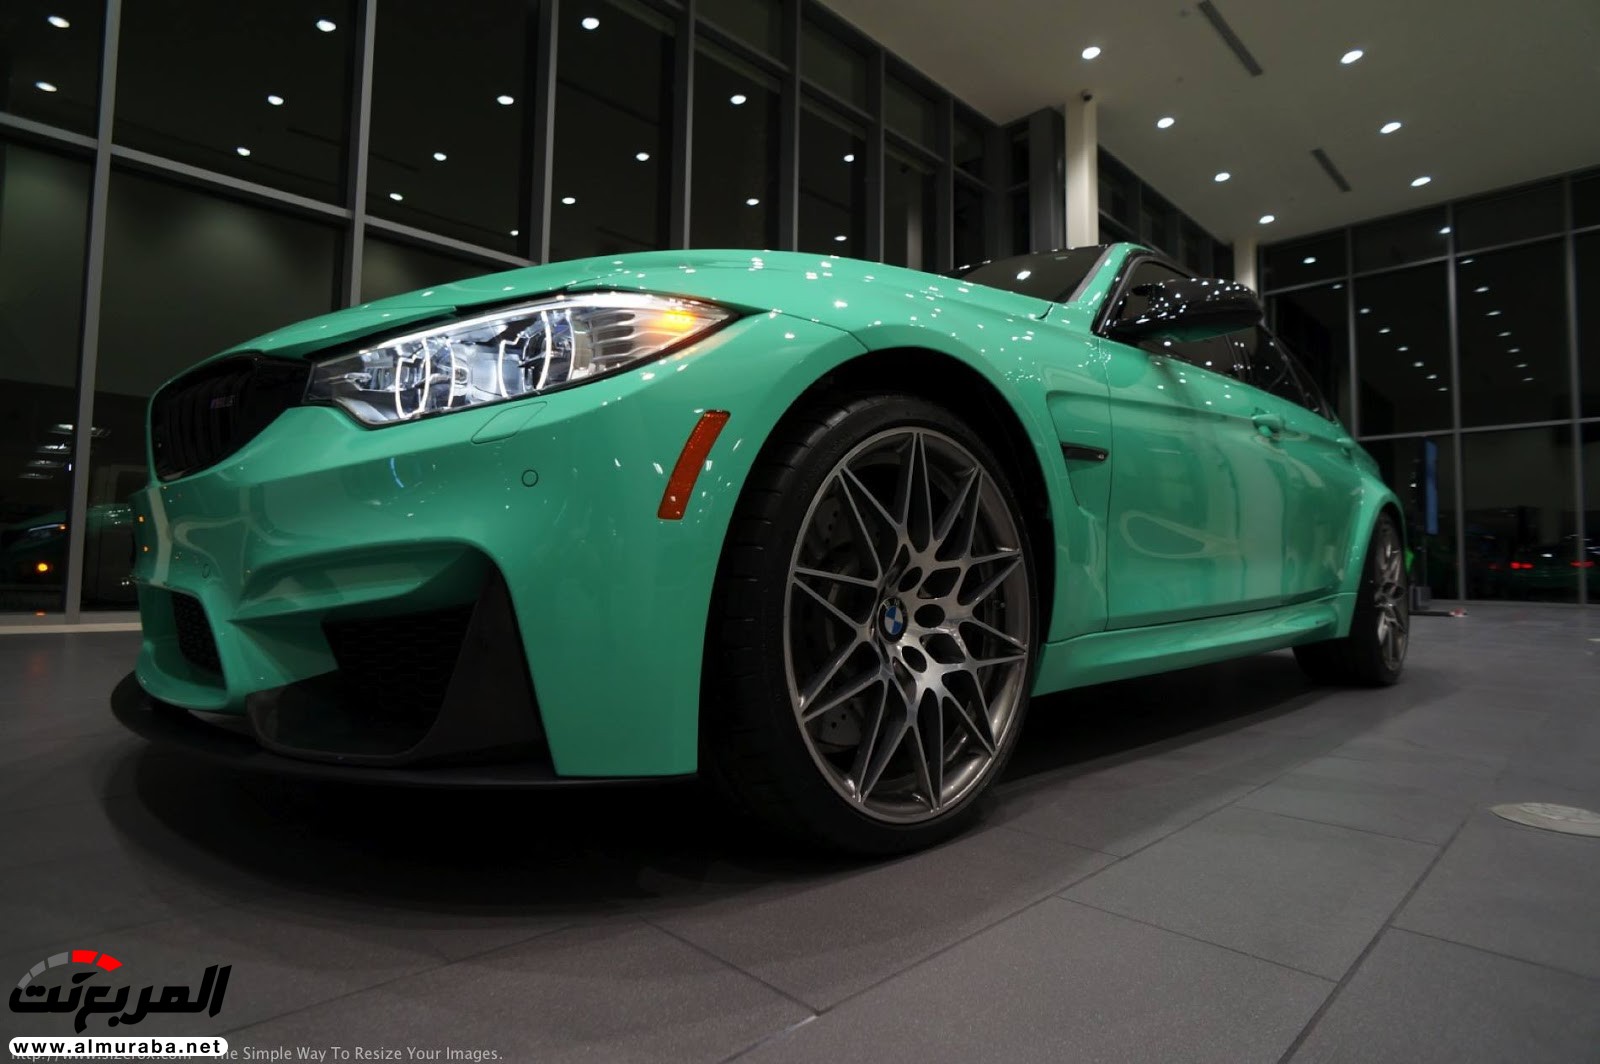 "بالصور" شاهد "بي إم دبليو" F80 M3 الخاصة بطلاء النعناع الأخضر BMW 87